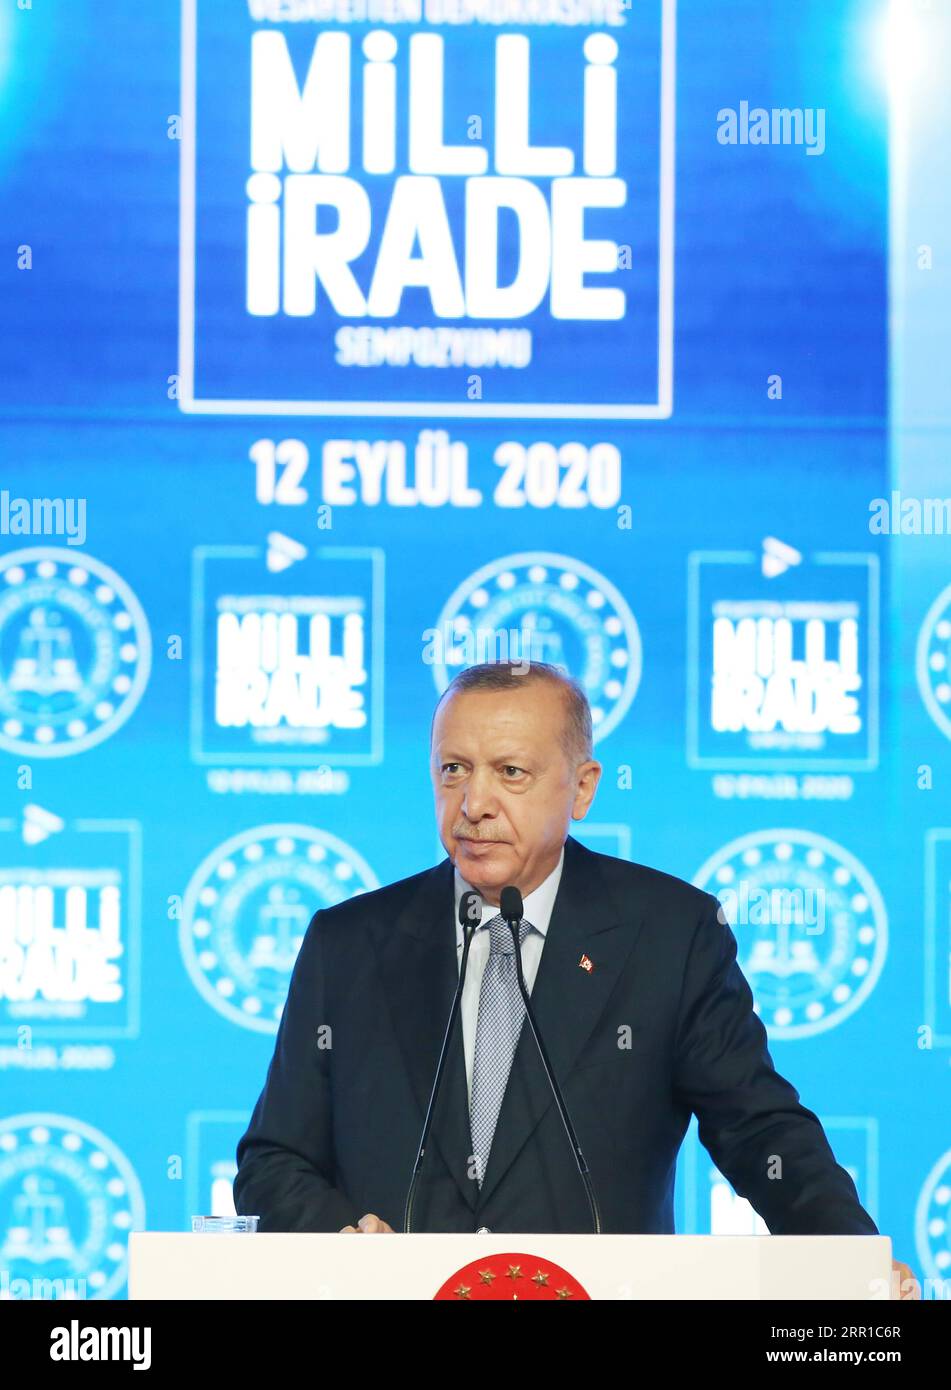 200912 -- ISTANBUL, 12 settembre 2020 -- il presidente turco Recep Tayyip Erdogan parla ad un simposio a Istanbul, in Turchia, il 12 settembre 2020. Erdogan sabato ha avvertito la controparte francese Emmanuel Macron sull'opposizione di quest'ultima alle attività marittime turche nel Mediterraneo orientale. TURCHIA-ISTANBUL-PRESIDENTE-E.. MED DISPUTE Xinhua PUBLICATIONxNOTxINxCHN Foto Stock